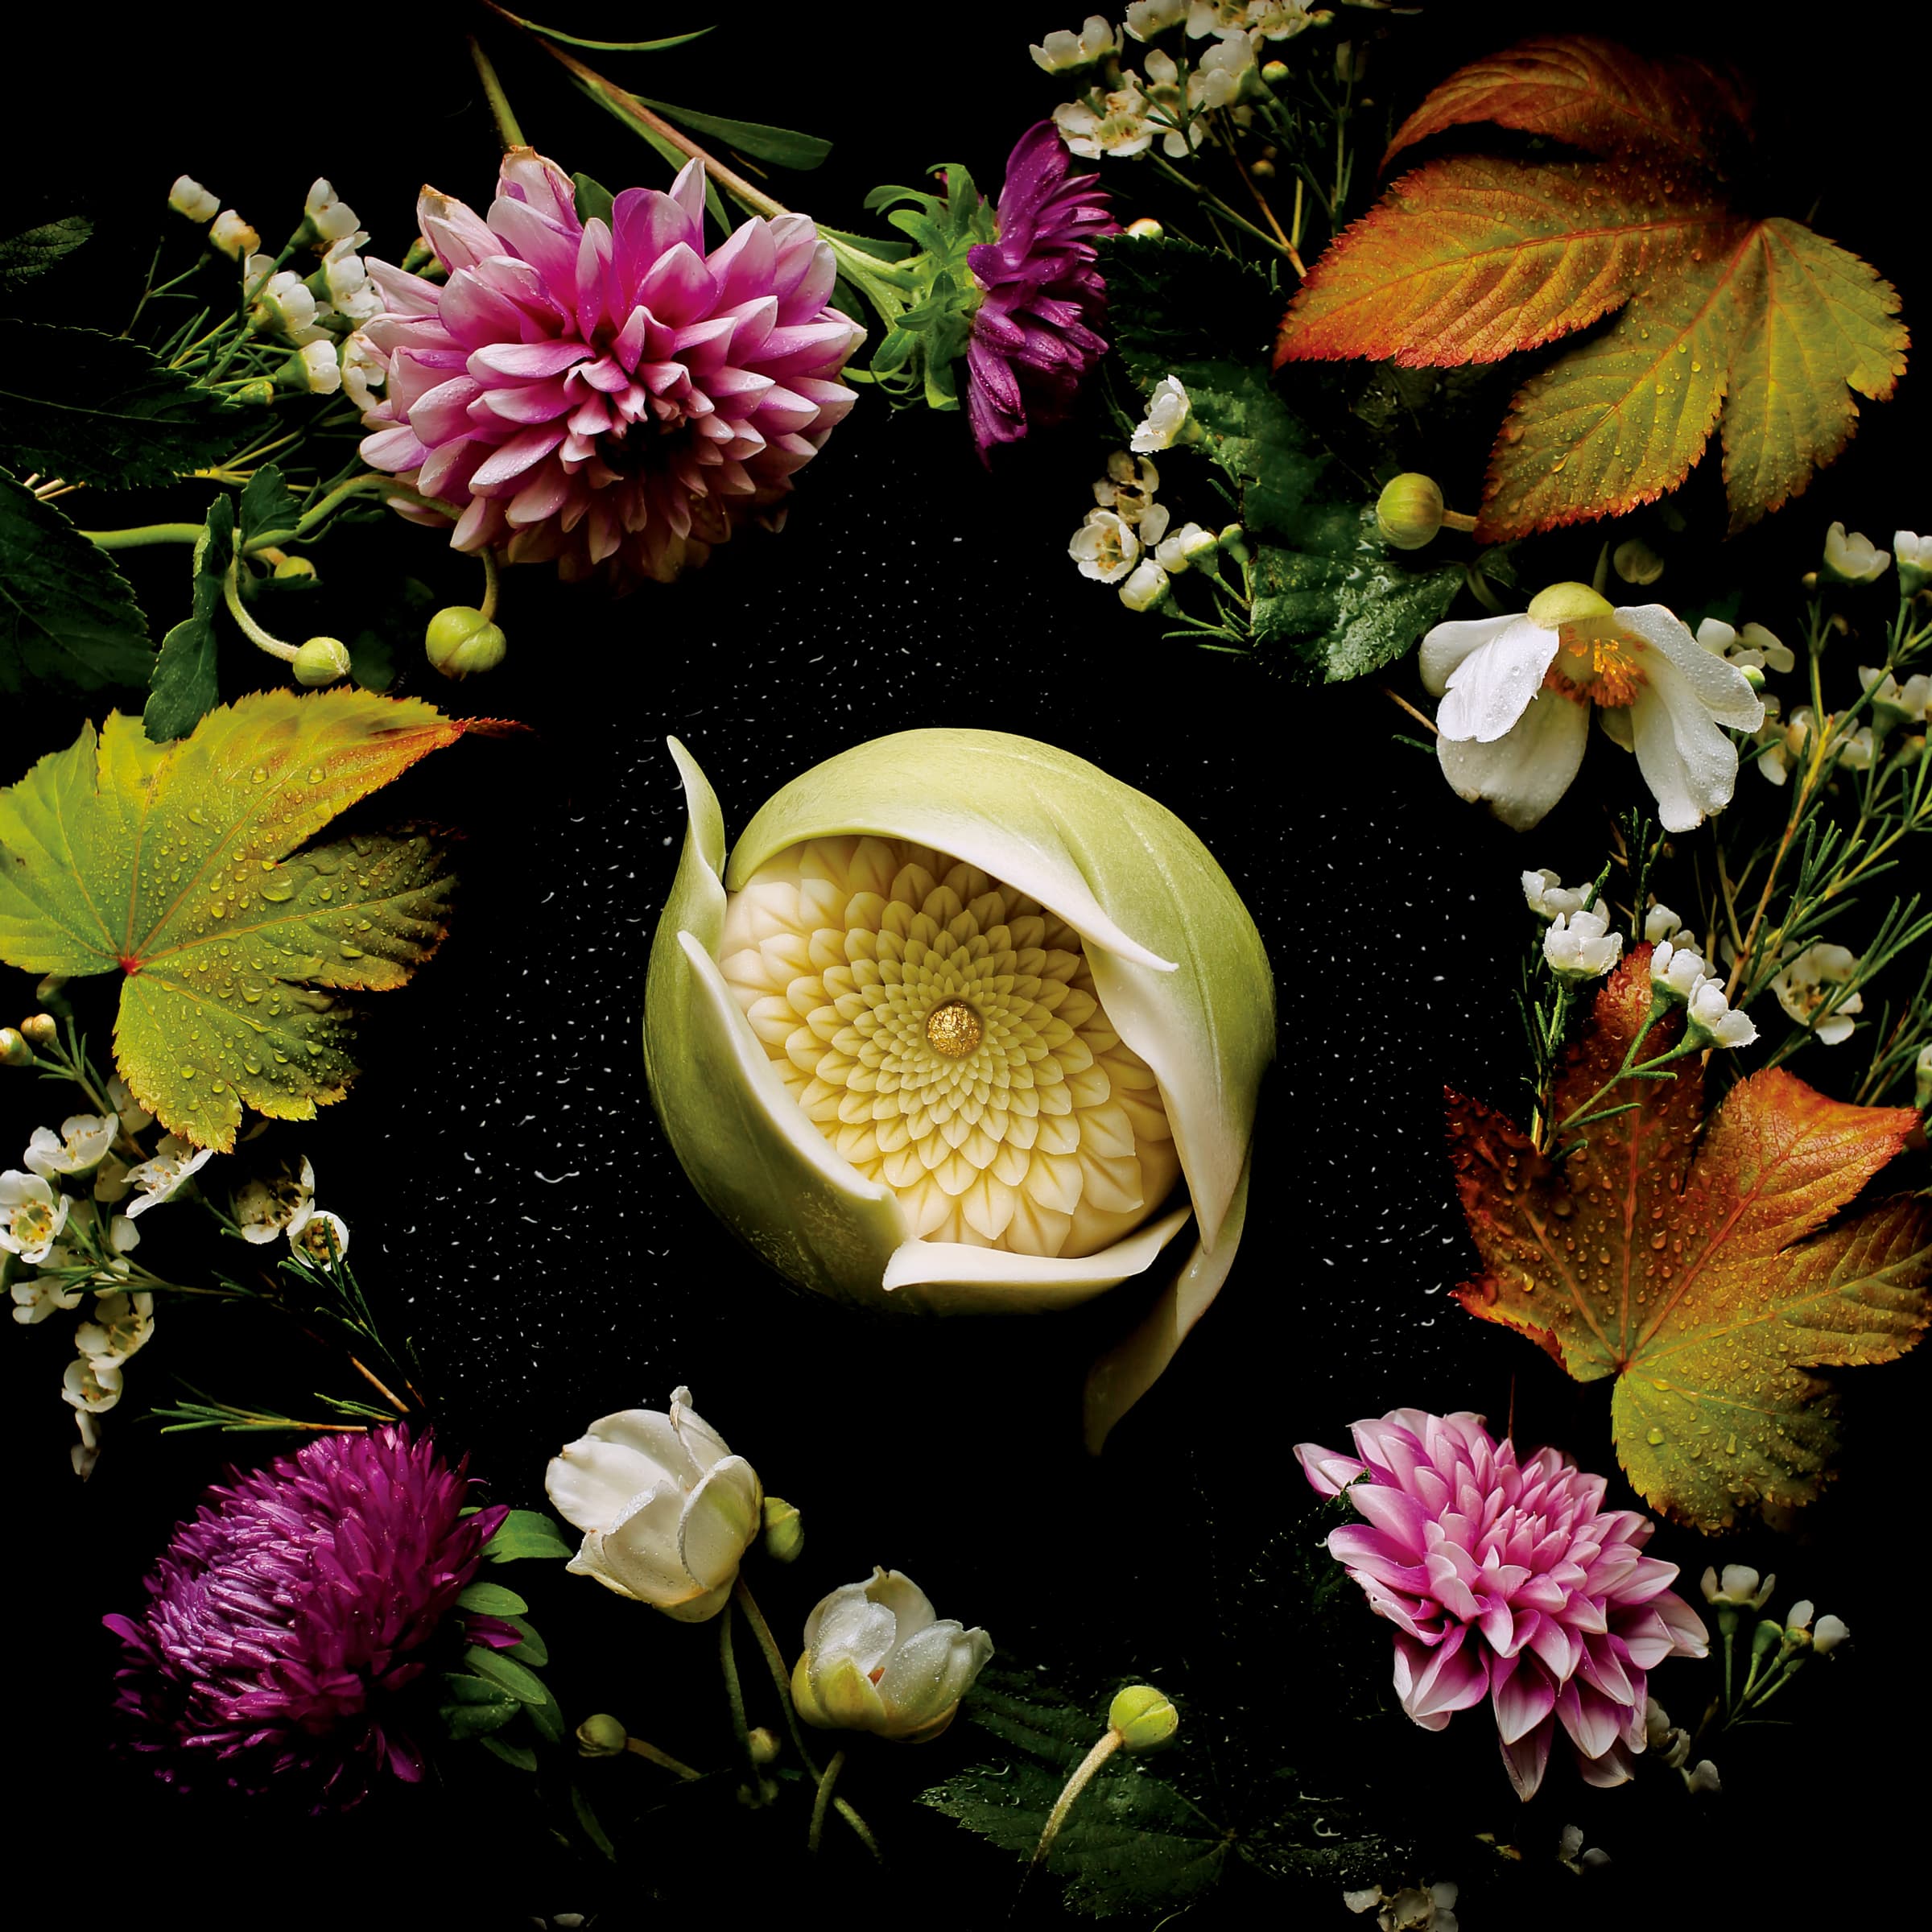 菓铭“叶隐菊（Peeping Chrysanthemum）”。华丽的菓子，名称让人联想到武士精神。